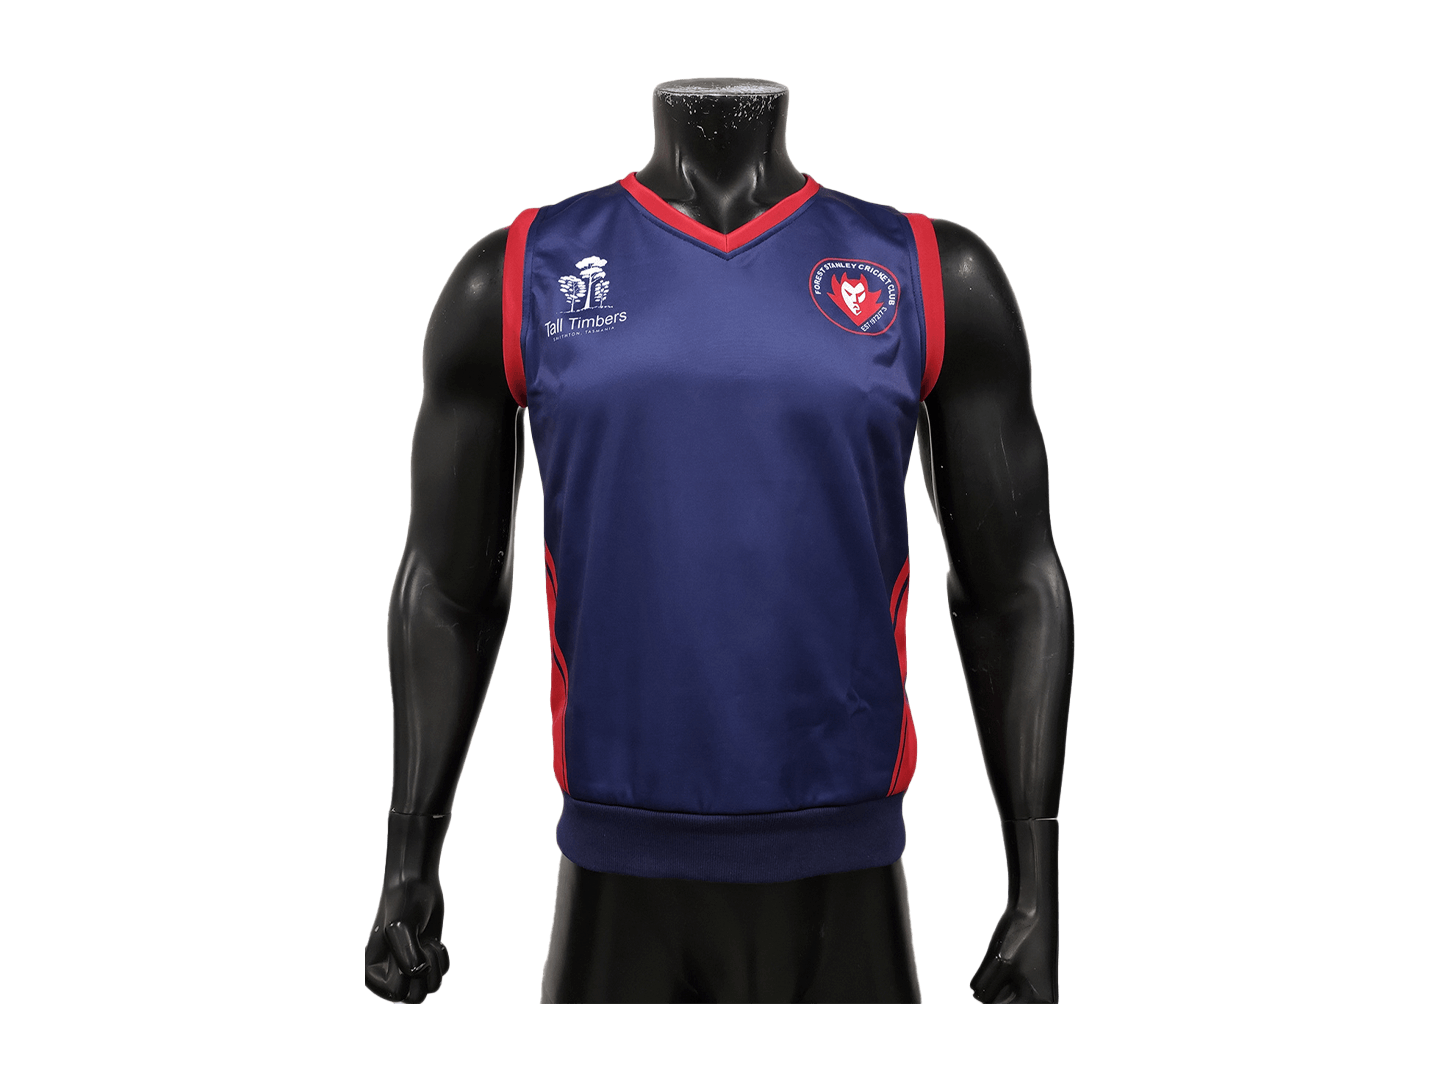 Cricket Vest Sports Apparel Manufacturer